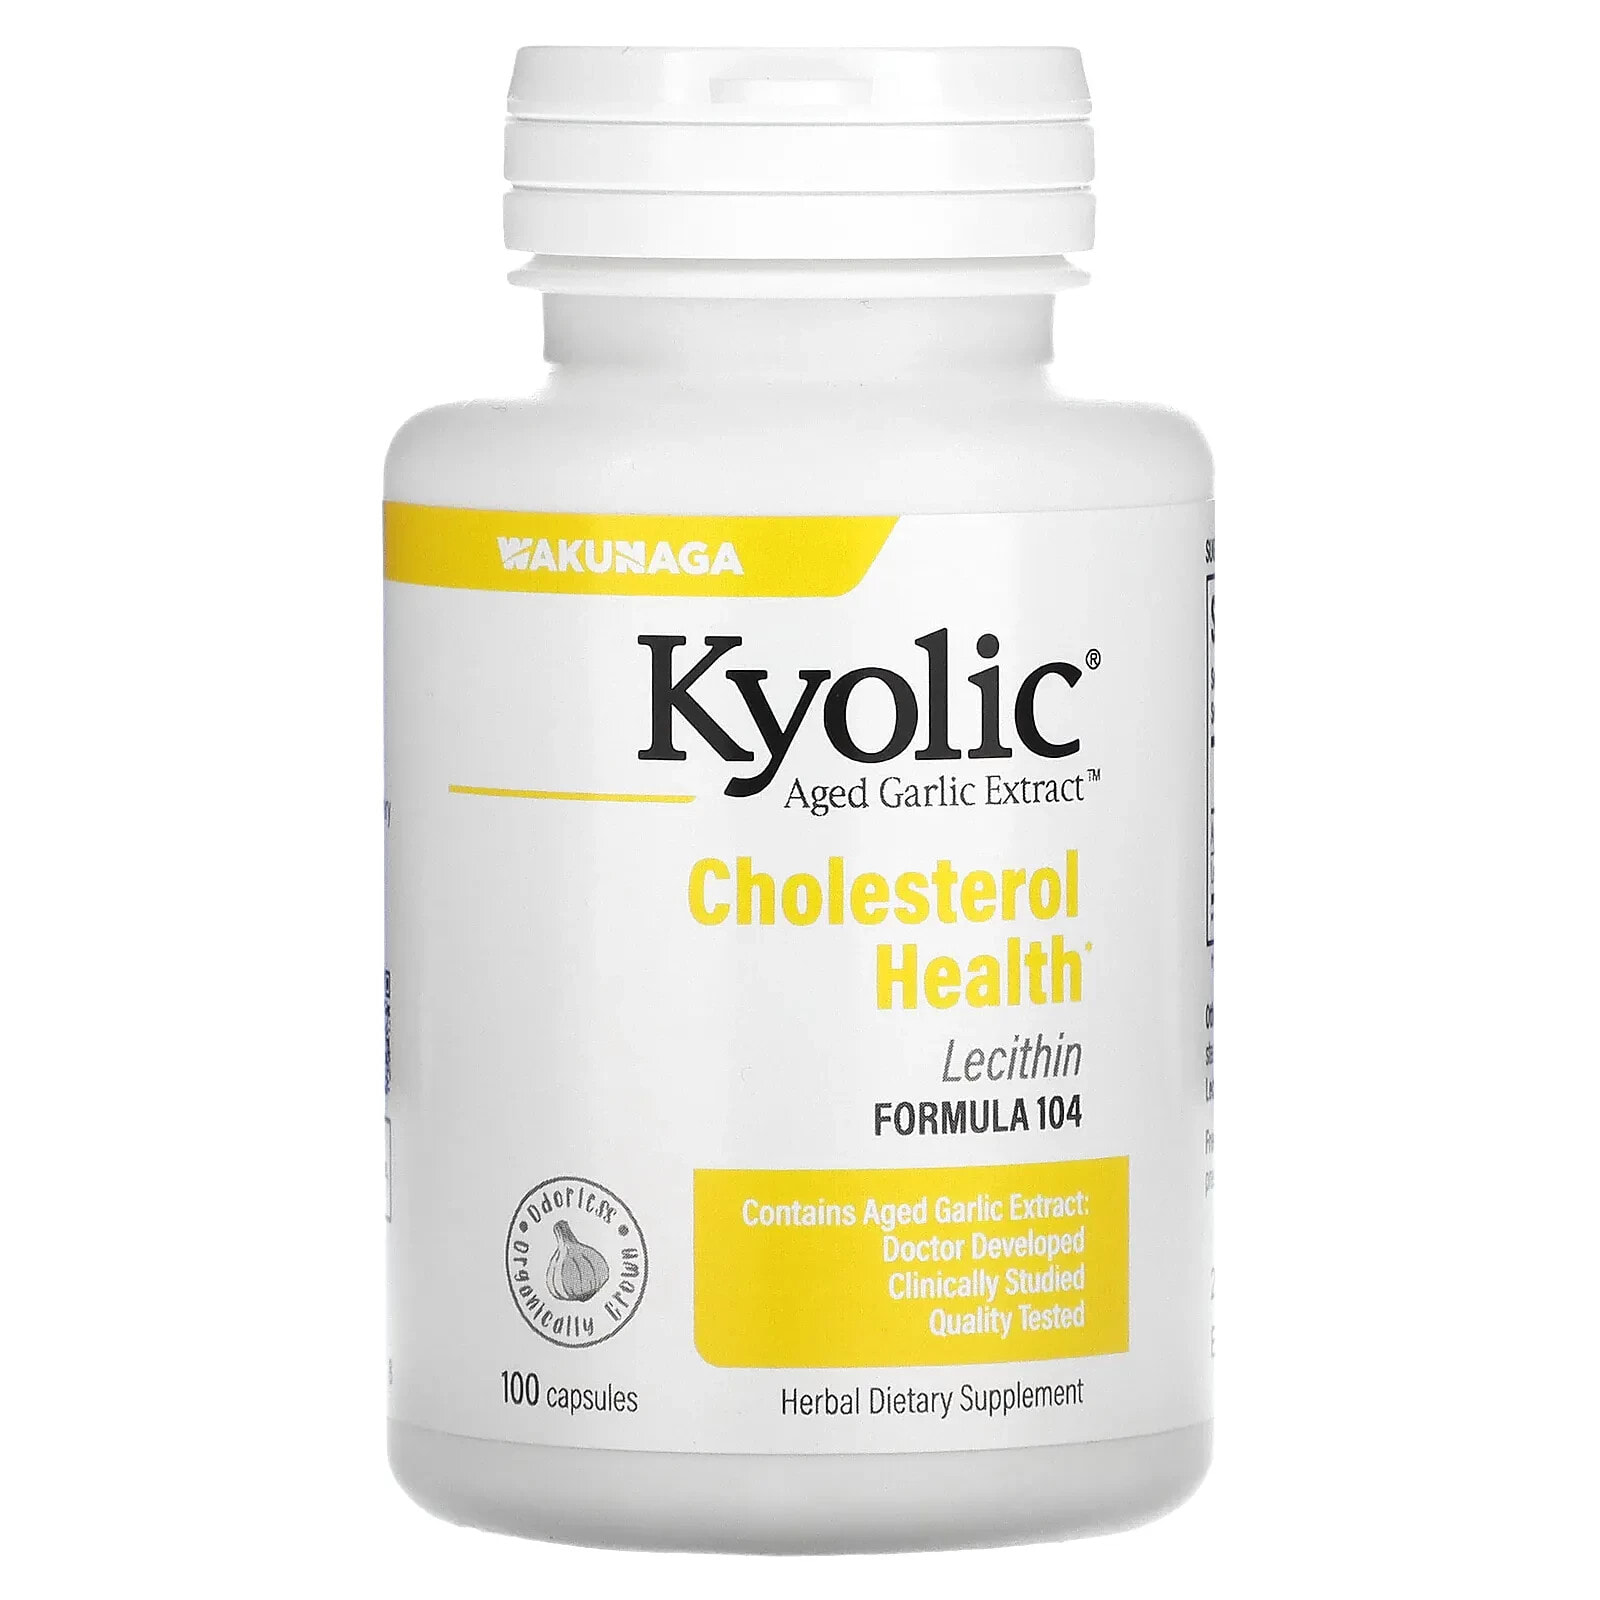 Киолик, Aged Garlic Extract, экстракт чеснока с лецитином, формула для снижения уровня холестерина 104, 300 капсул